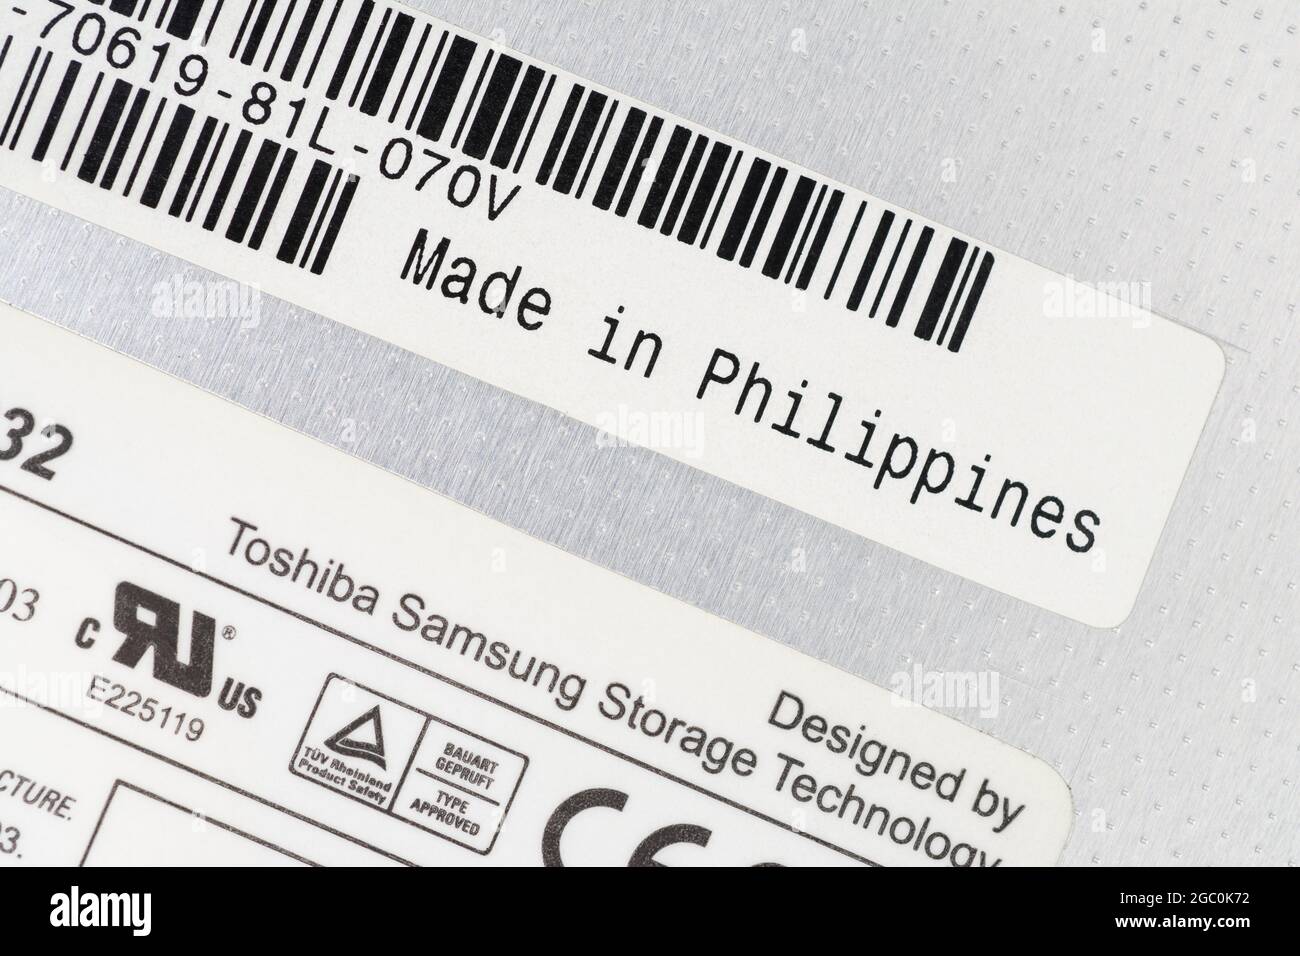 Étiquettes en papier à l'arrière d'un graveur de DVD portable amovible Toshiba-Samsung avec étiquette Made in the Philippines. Pour délocaliser les pièces. Banque D'Images